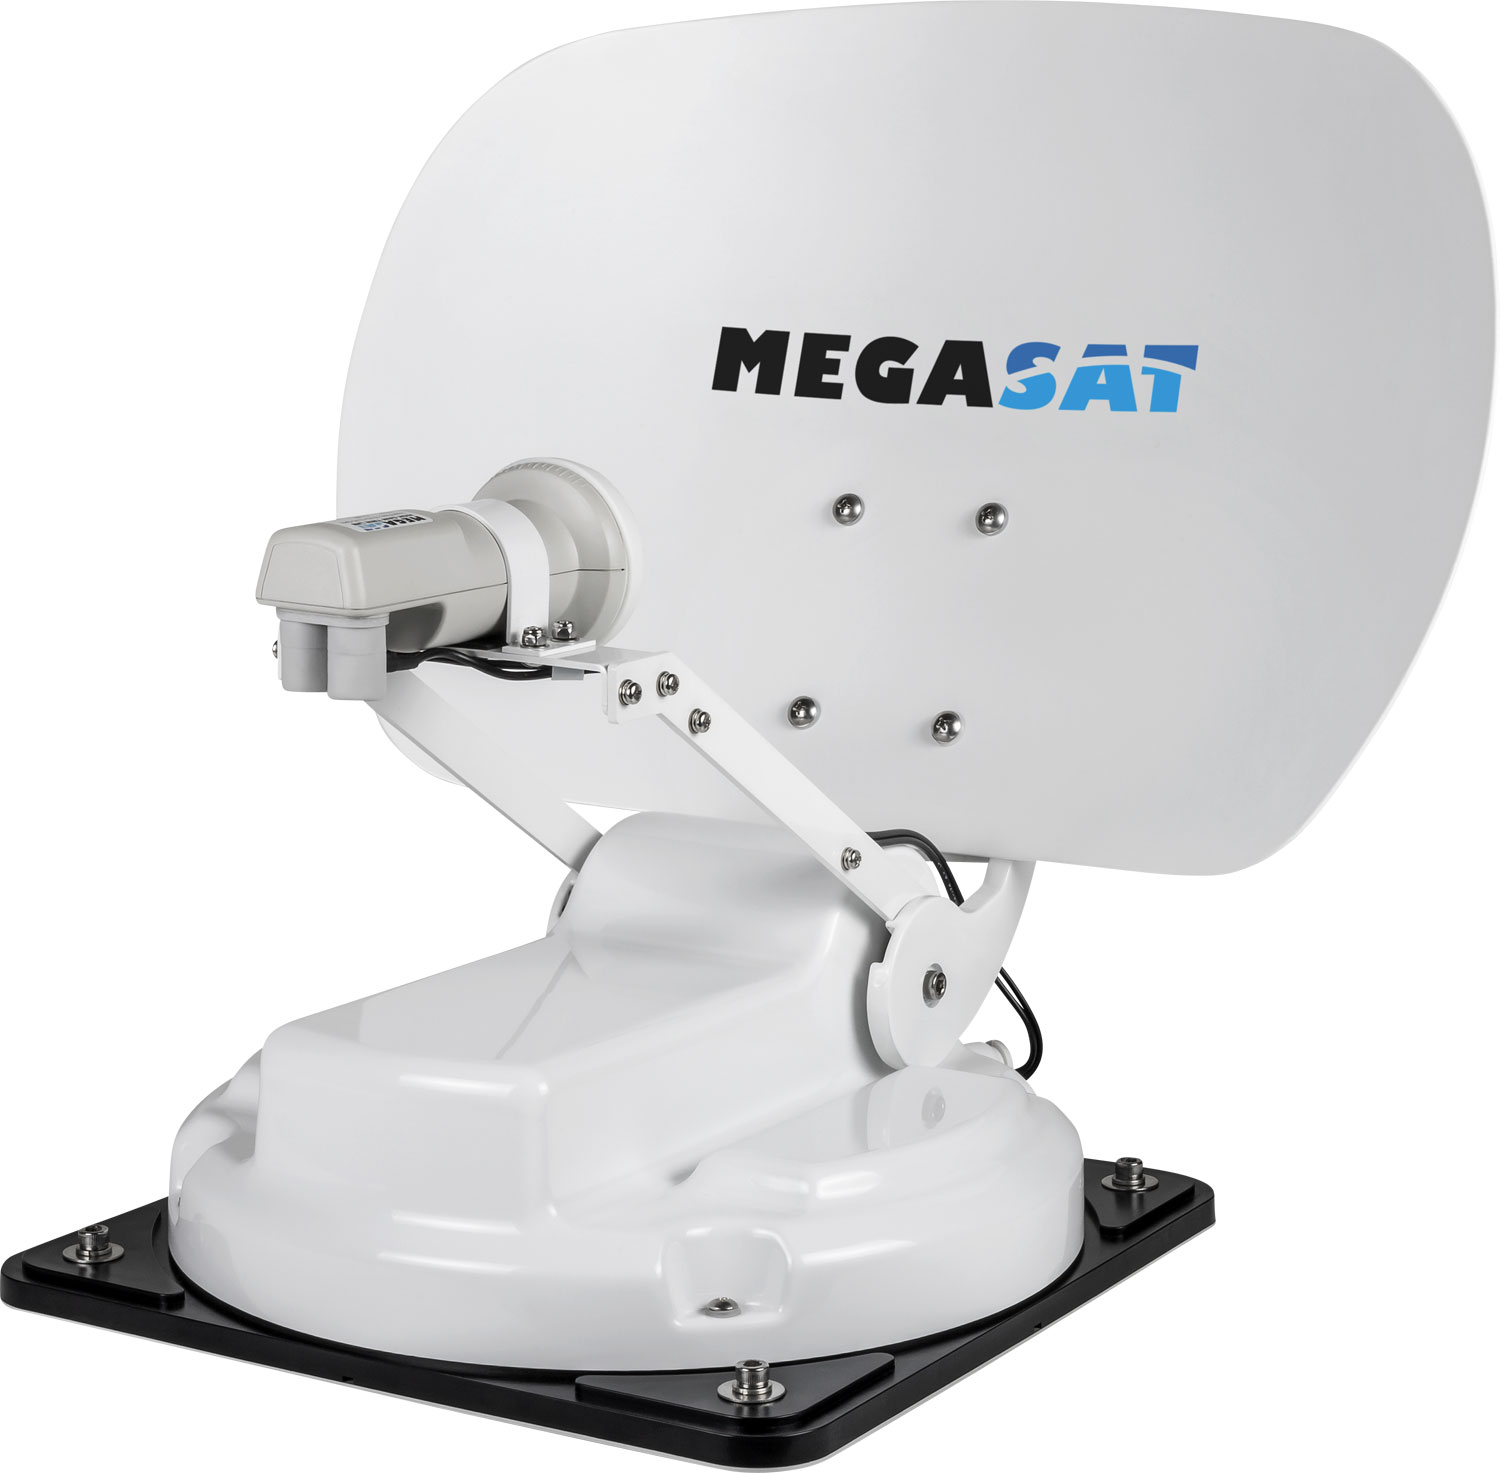 Megasat Caravanman Kompakt 3 Sat-Anlage Single